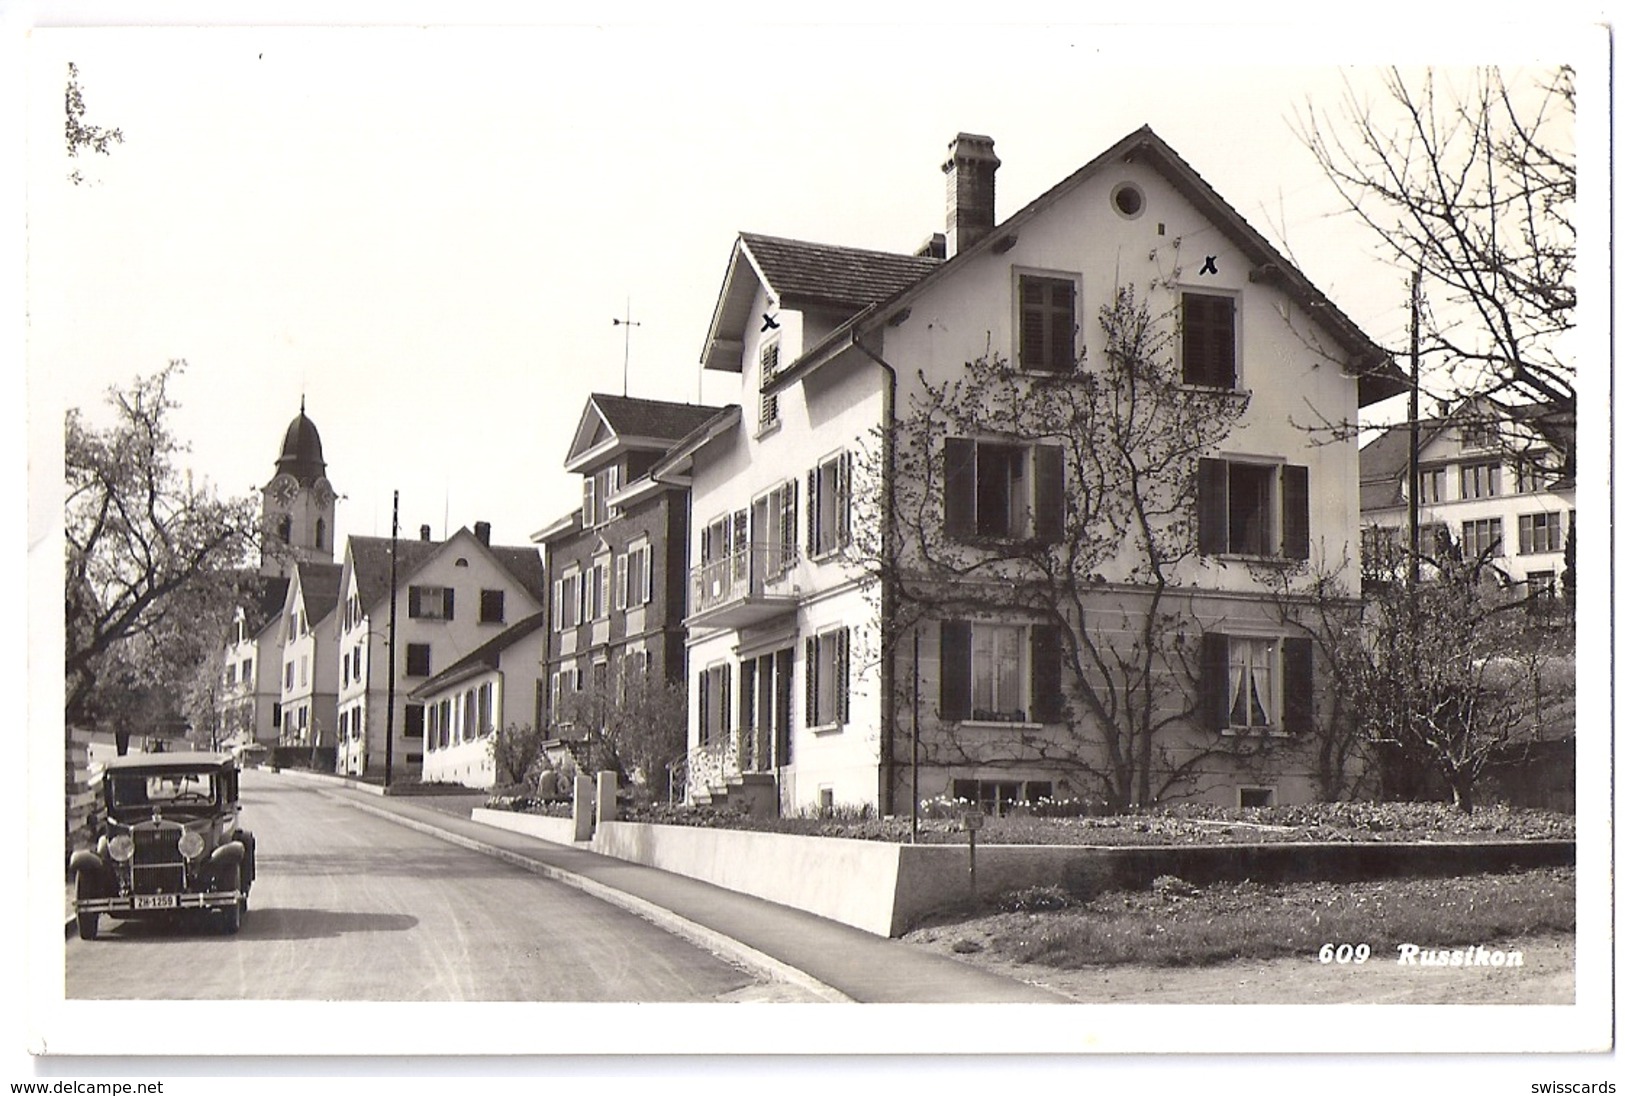 RUSSIKON: Dorfpassage Mit Oldtimer, Echt-Foto-AK ~1935 - Dorf